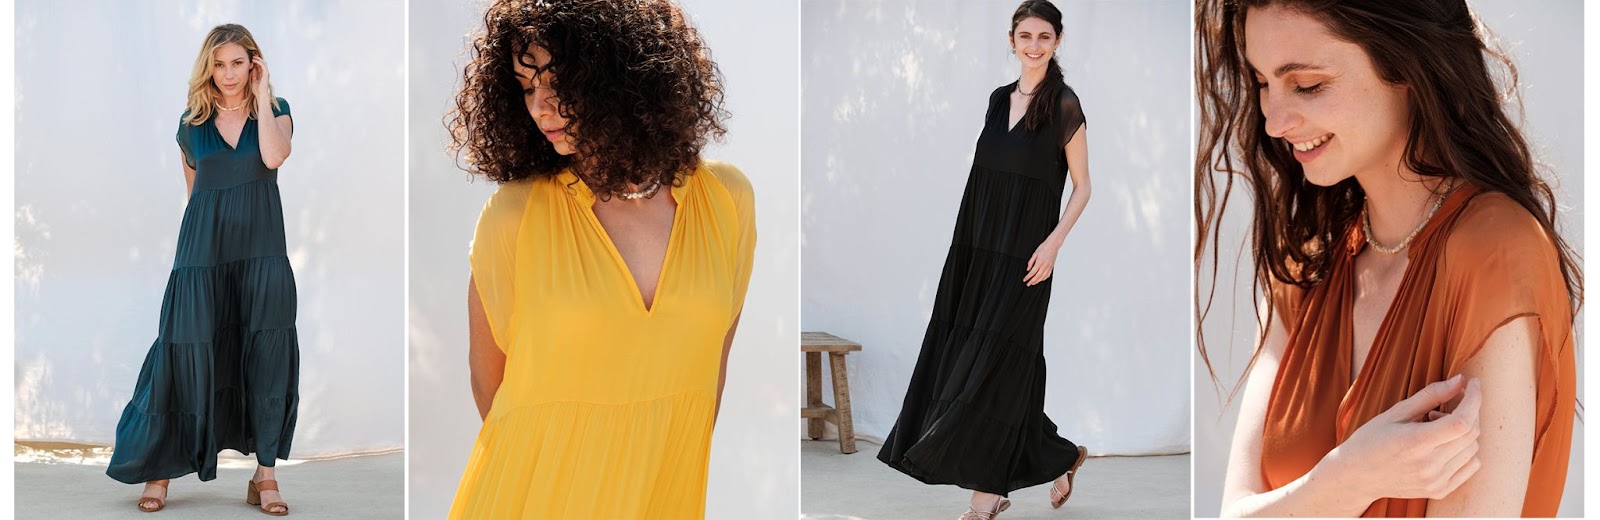 Les robes de l'été 2021 | BENOA – Benoa